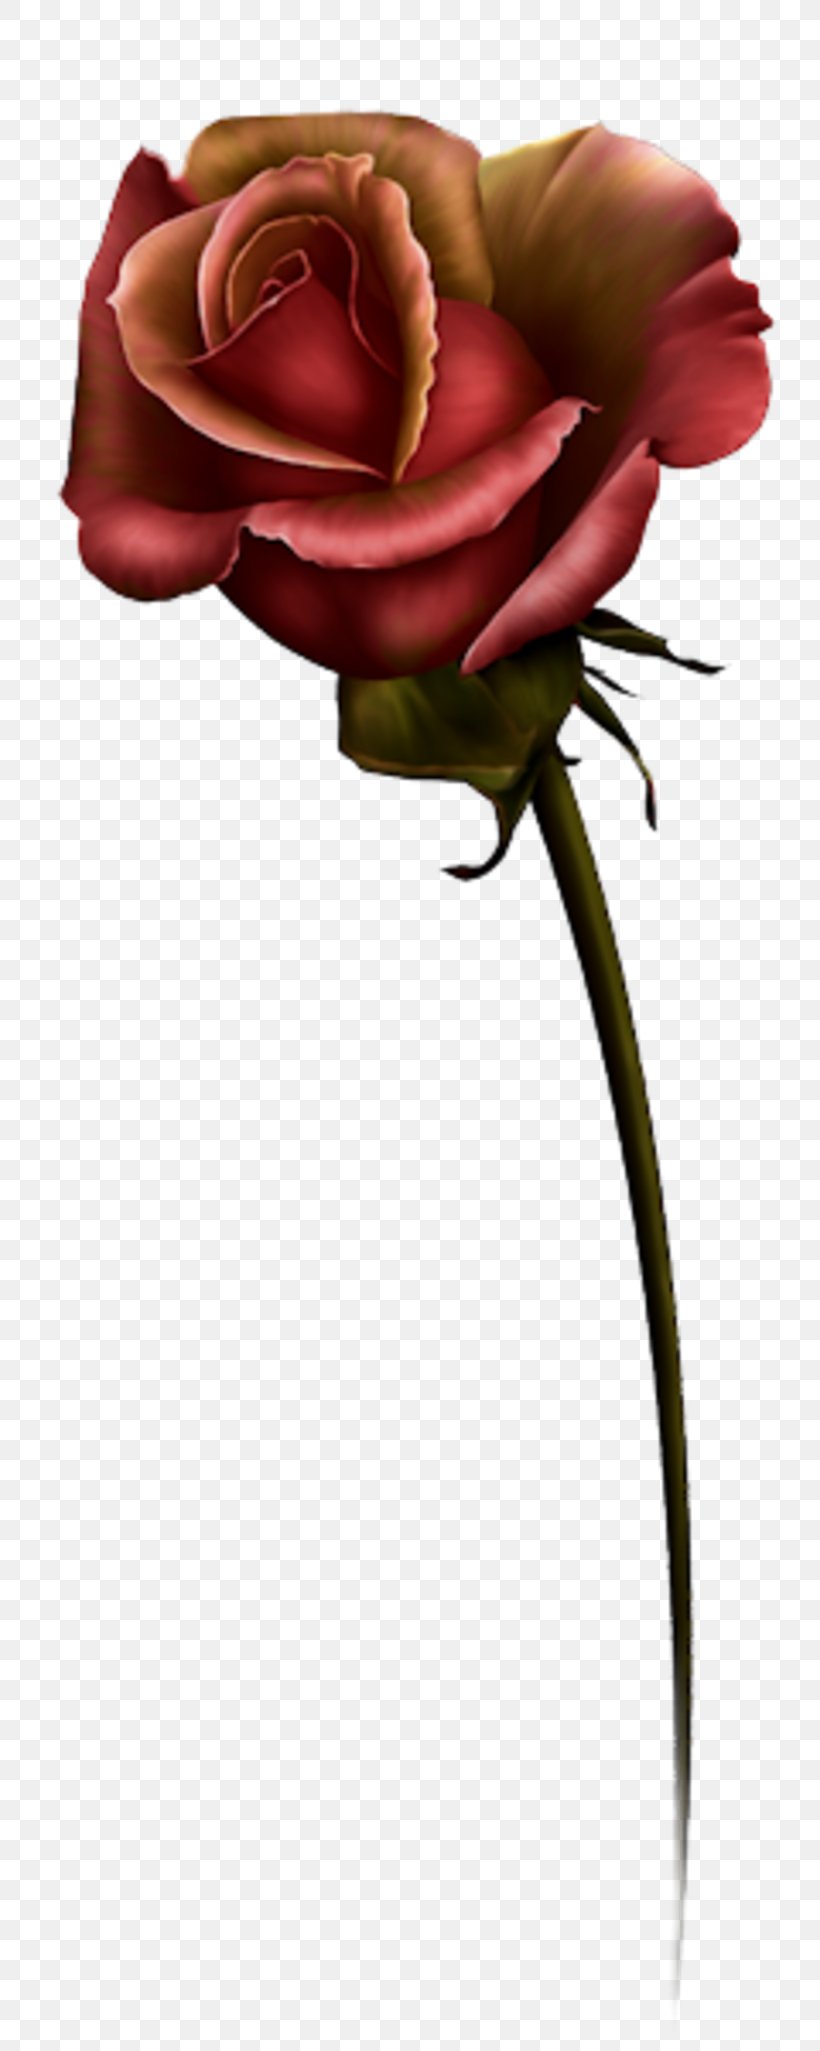 Garden Roses Flower Clip Art, PNG, 800x2051px, Garden Roses, Art, Beach Rose, Cut Flowers, Floral Design Download Free